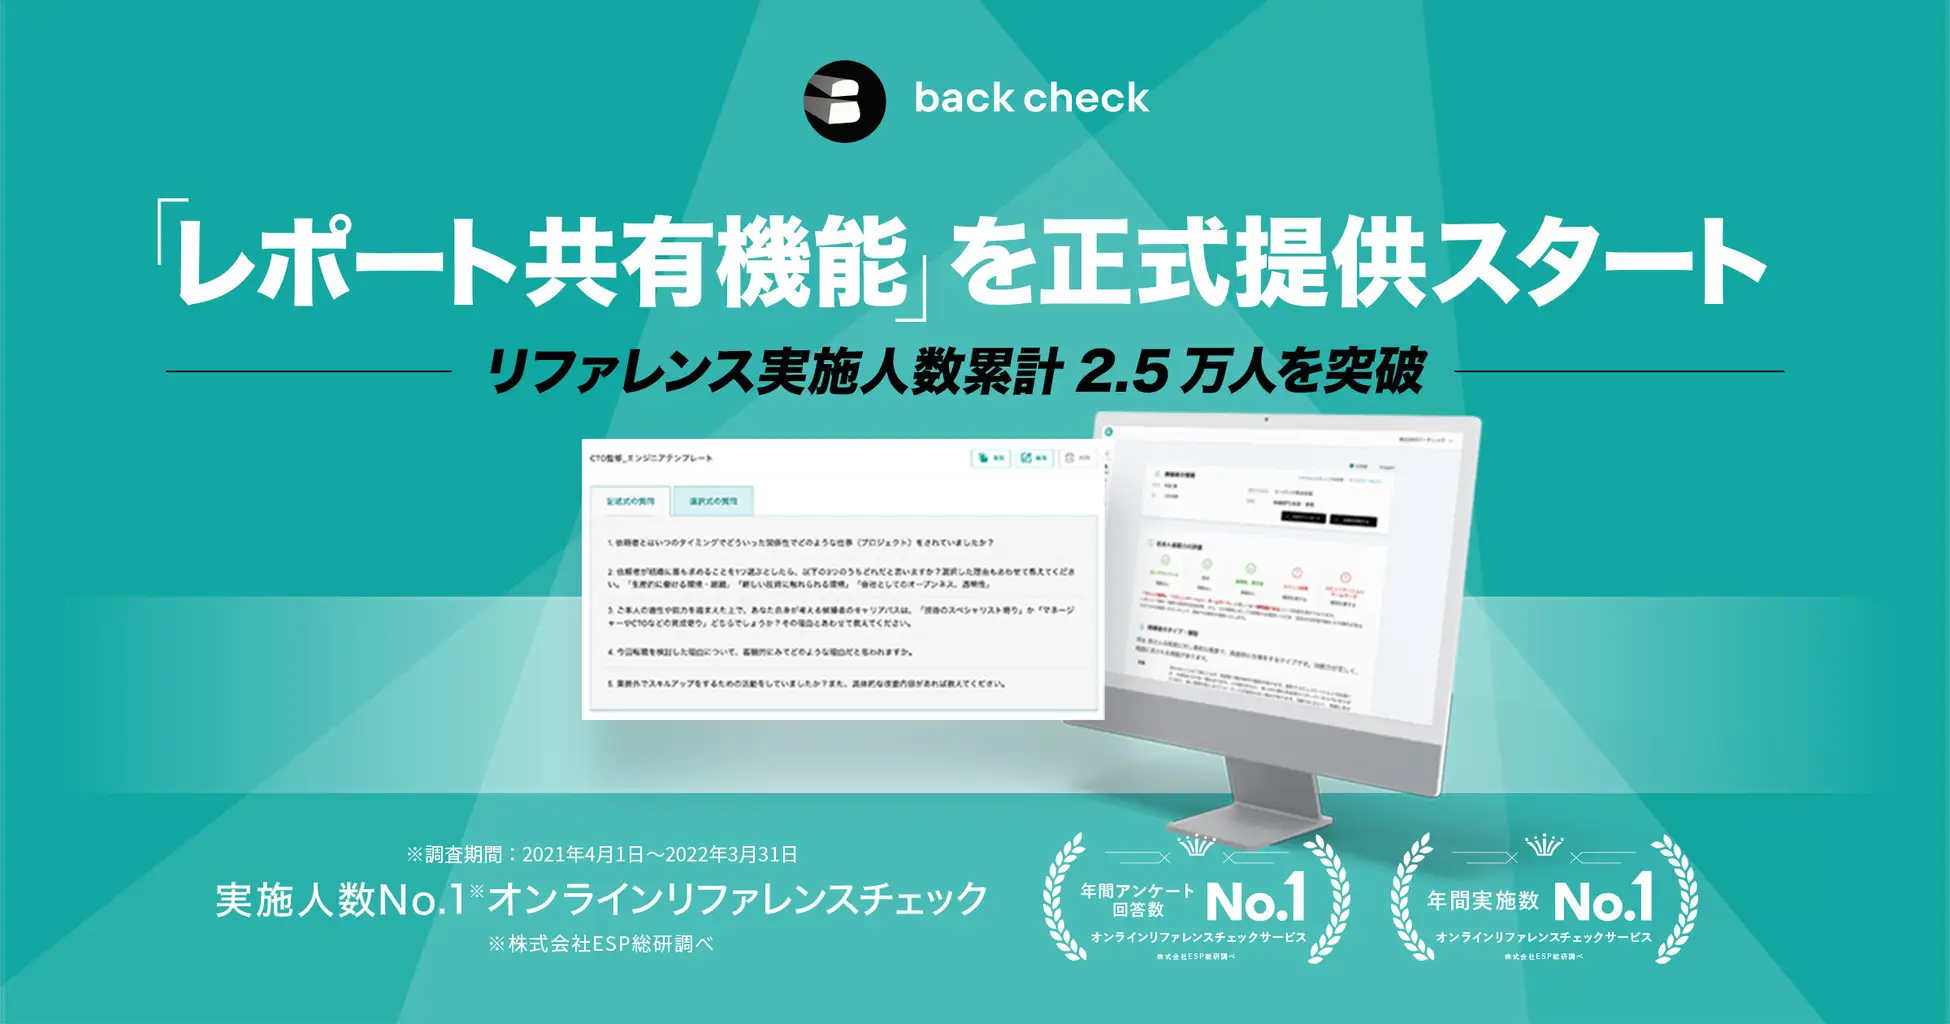 【back check】リファレンスチェックの「レポート共有機能」を正式提供スタート